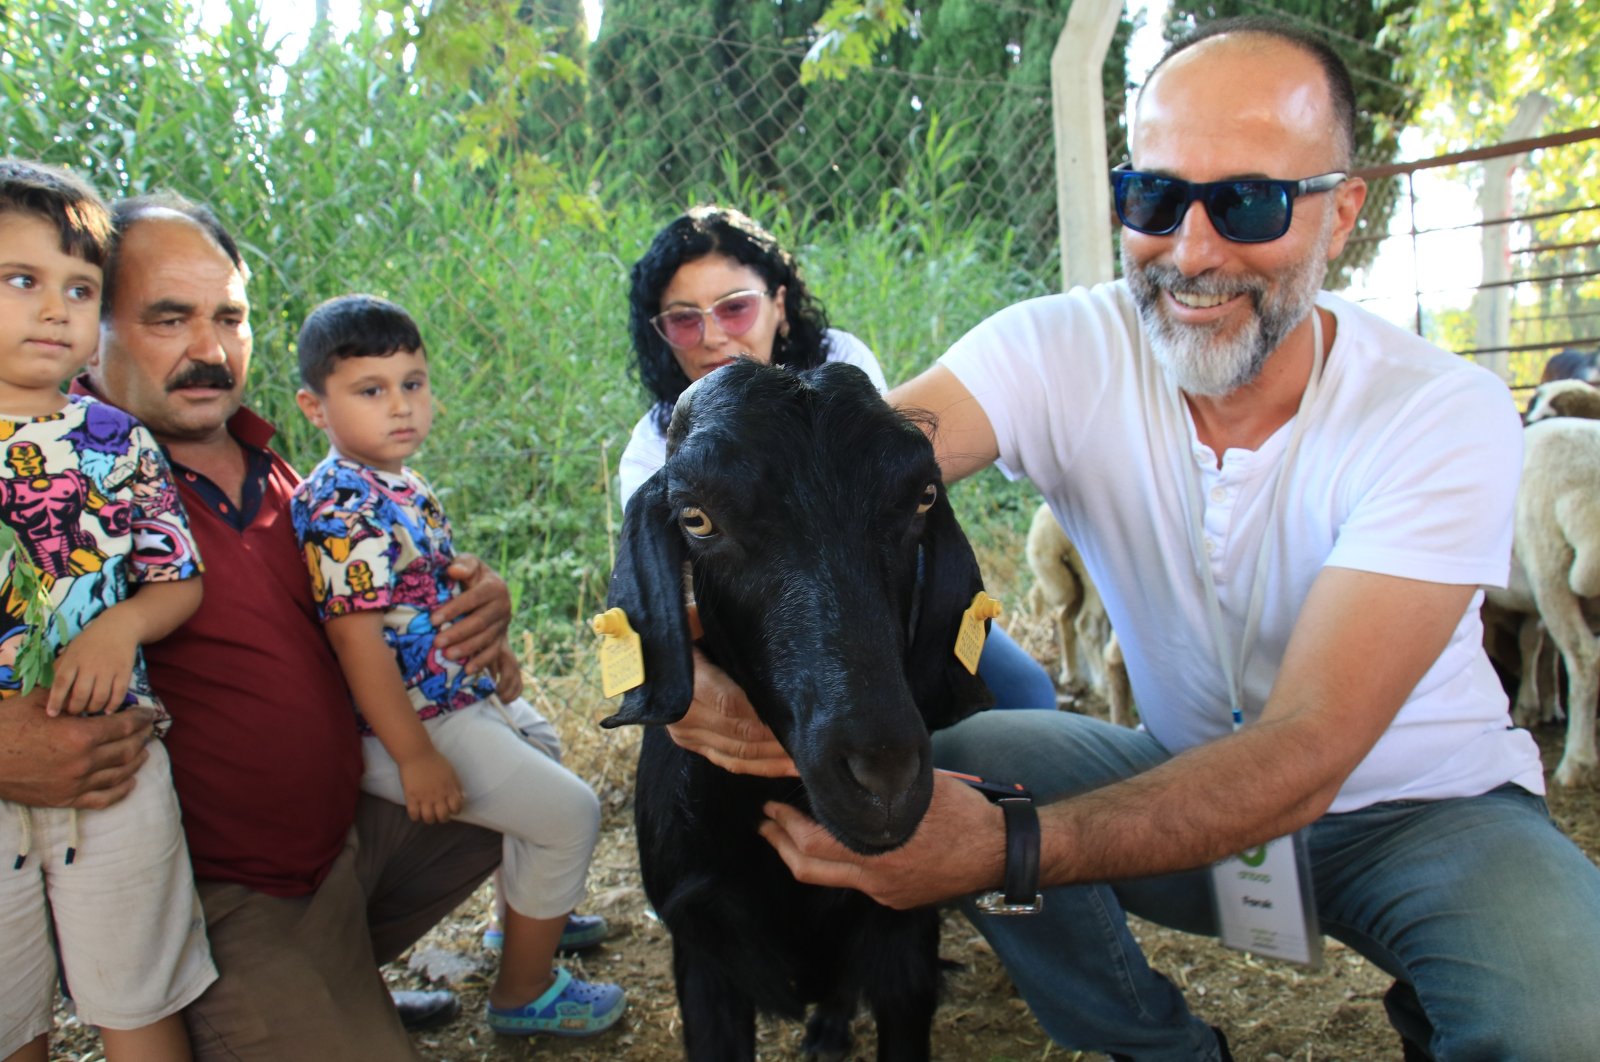 Kambing pelarian untuk bergabung dengan ‘Ferdinand’ di Izmir setelah melarikan diri dari pengorbanan